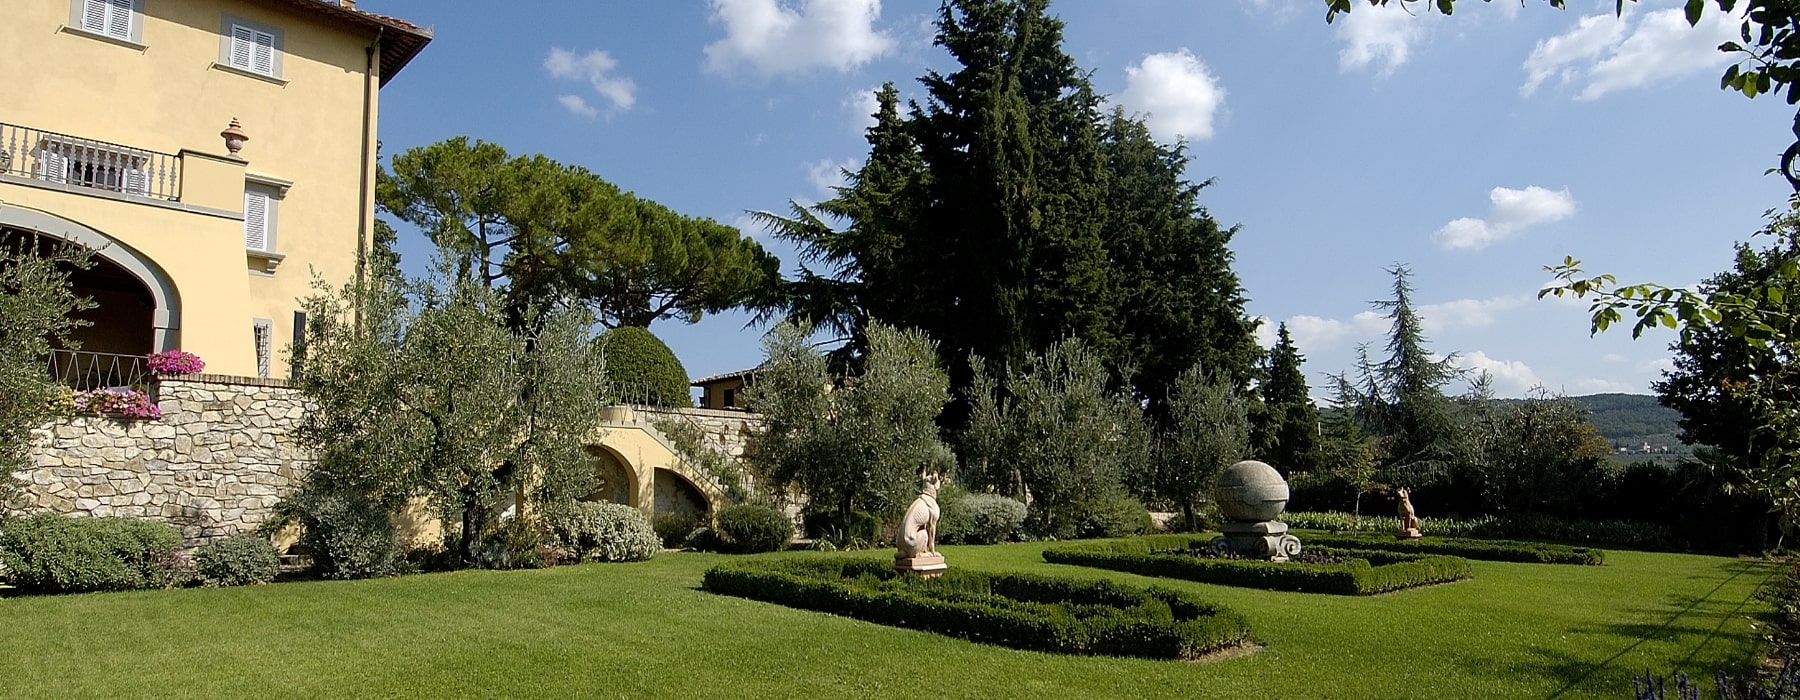 Creazione parchi e giardini in Toscana by Gardenpool